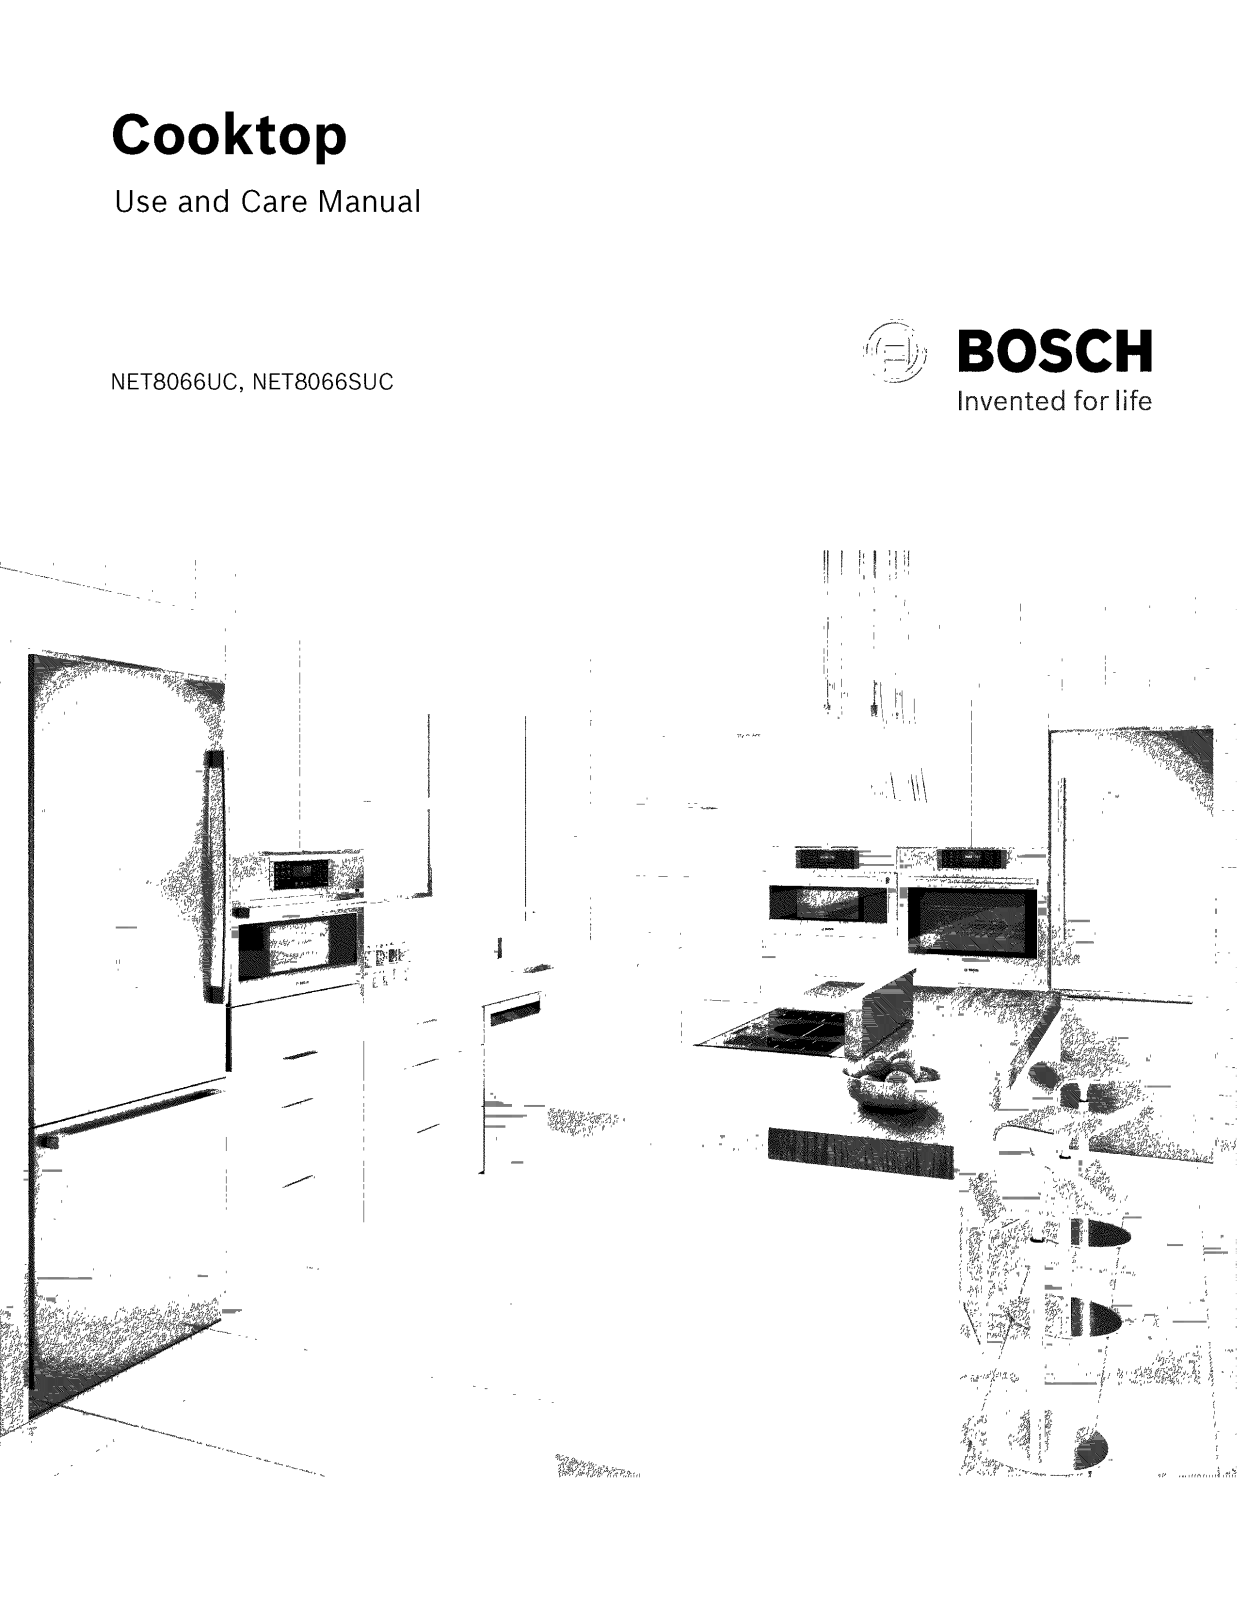 Bosch NET8066UC/01, NET8066SUC/01 Owner’s Manual